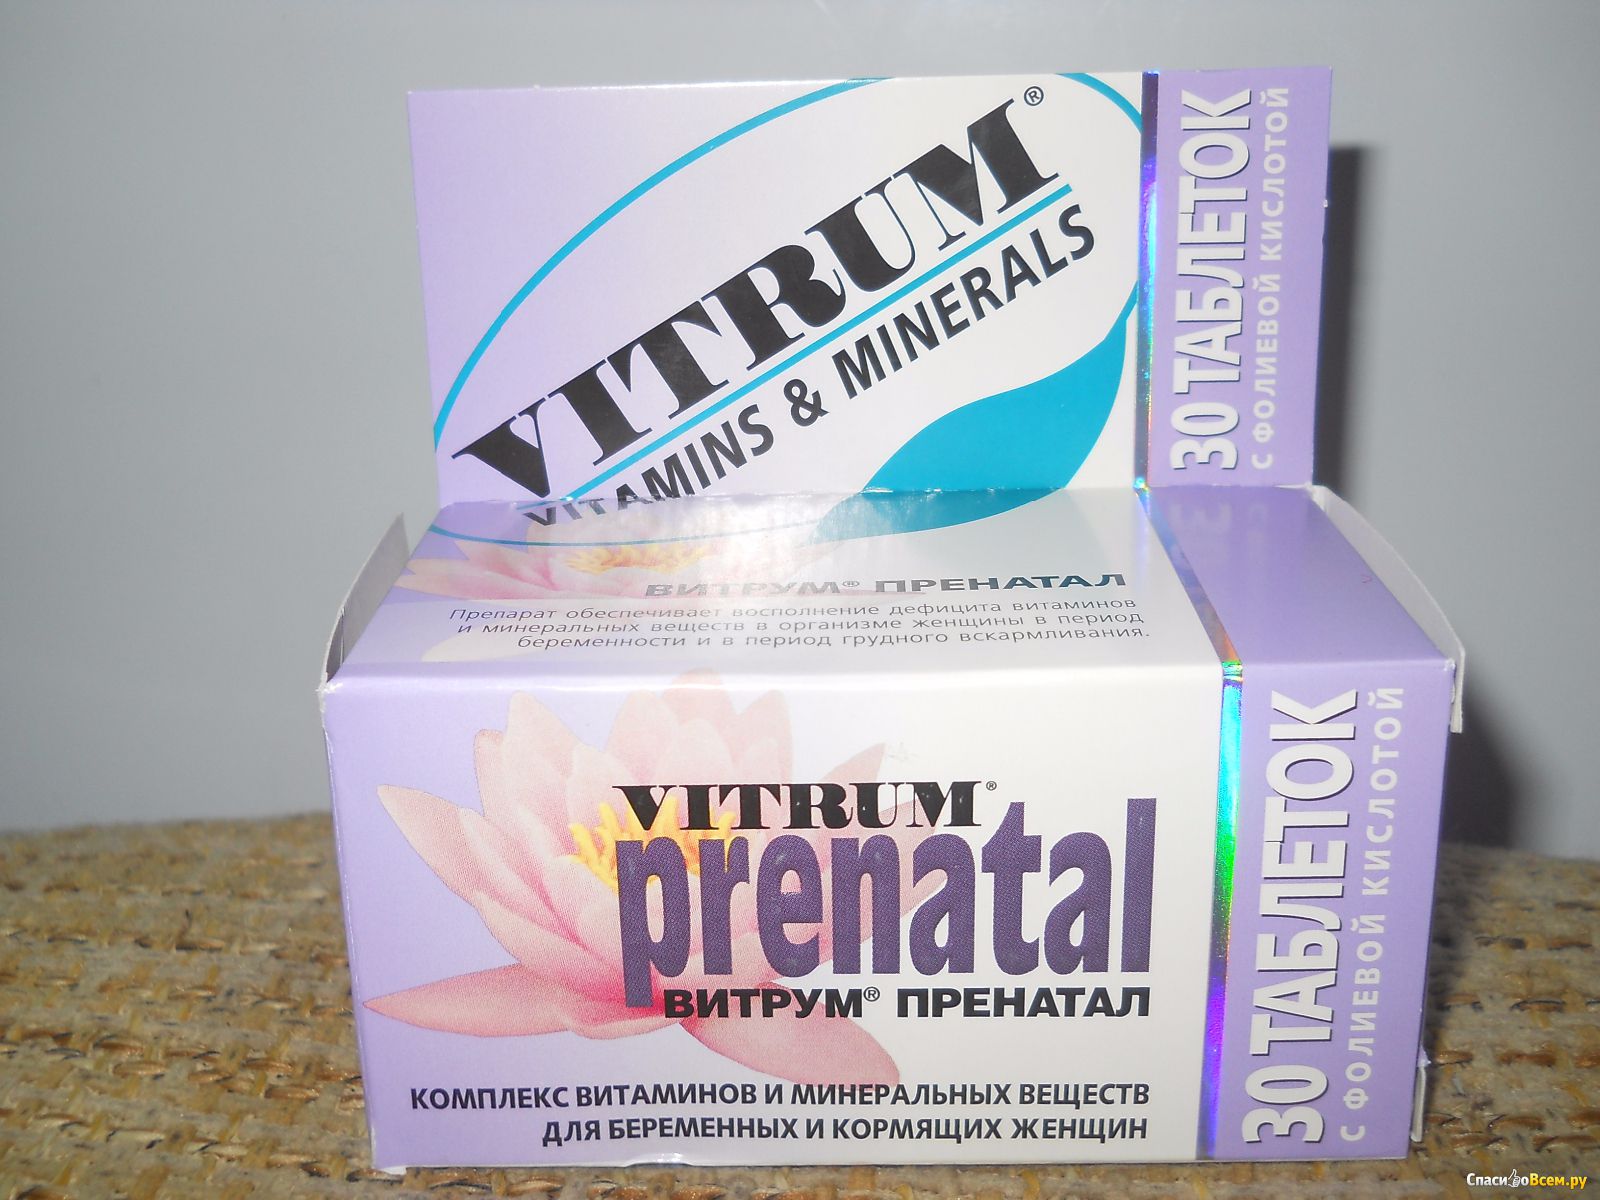 Витрум актив отзывы. Витрум витамины. Витрум пренатал. Витамины для беременных витрум пренатал. Витрум витамины для женщин.